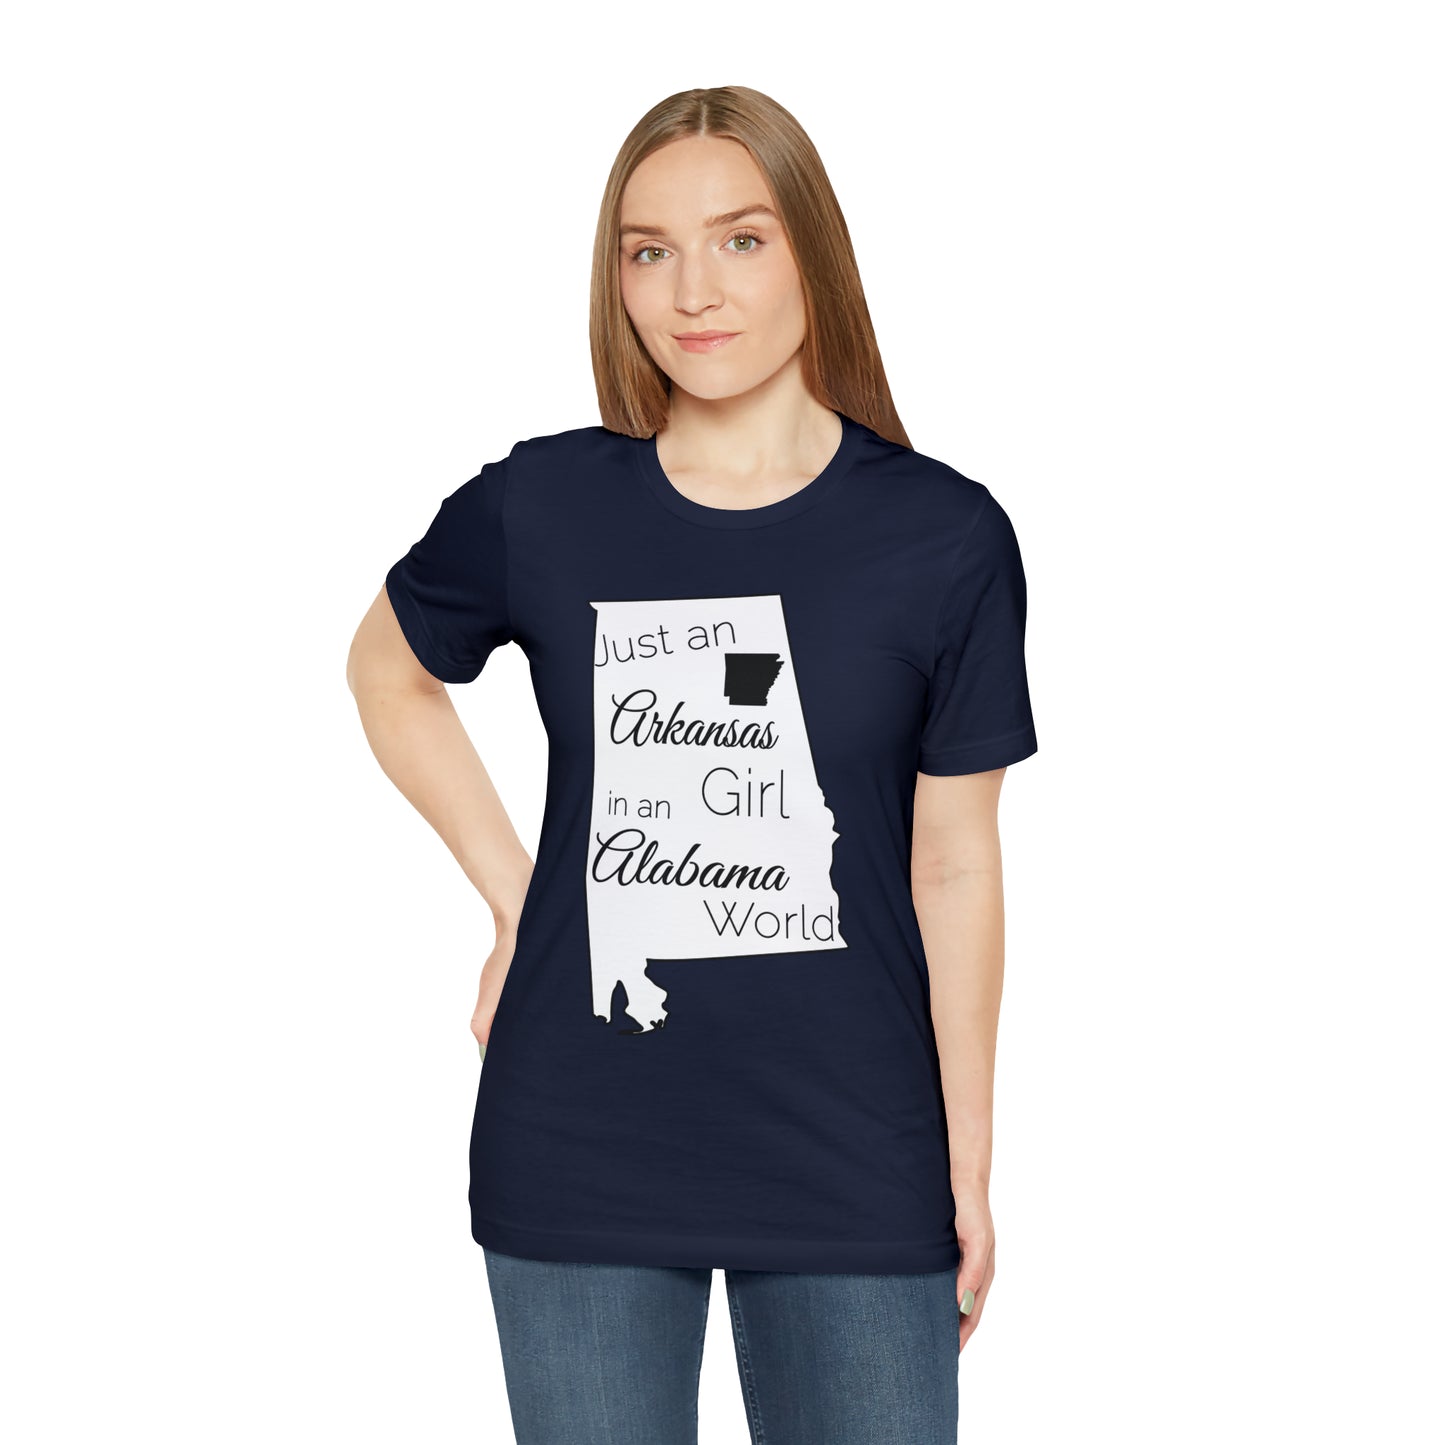 Just an Arkansas Girl in an Alabama World Short Sleeve T-shirt